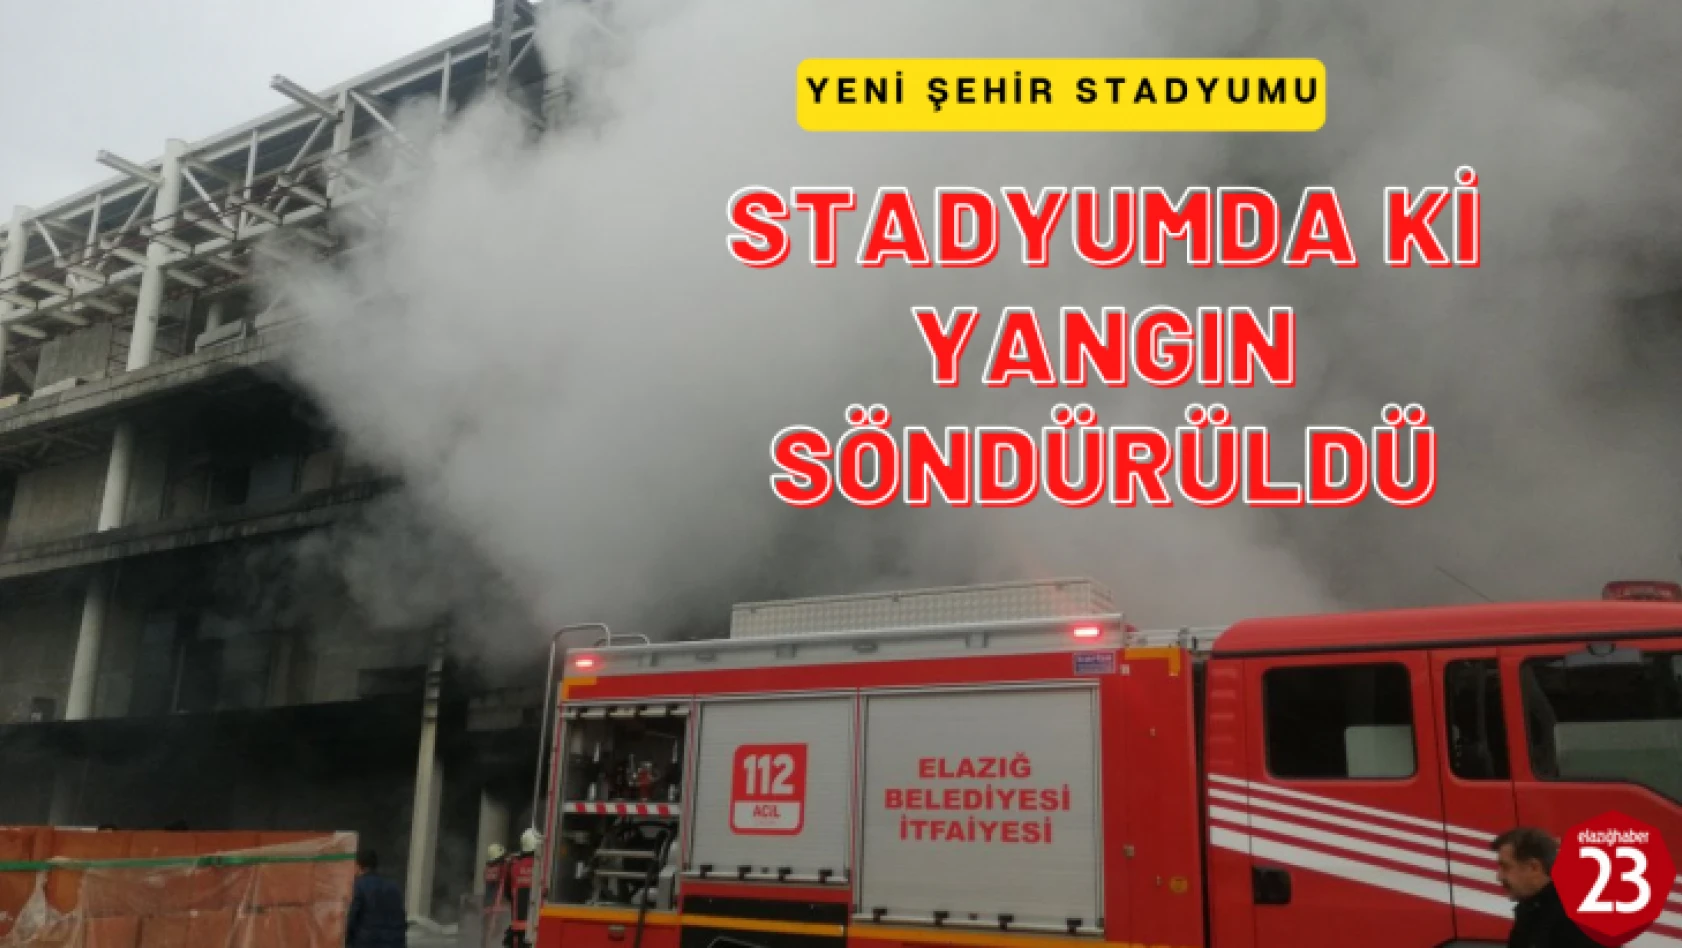 Atatürk Stadyumunda Korkutan Yangın, Yangın Kontrol Altına Alındı